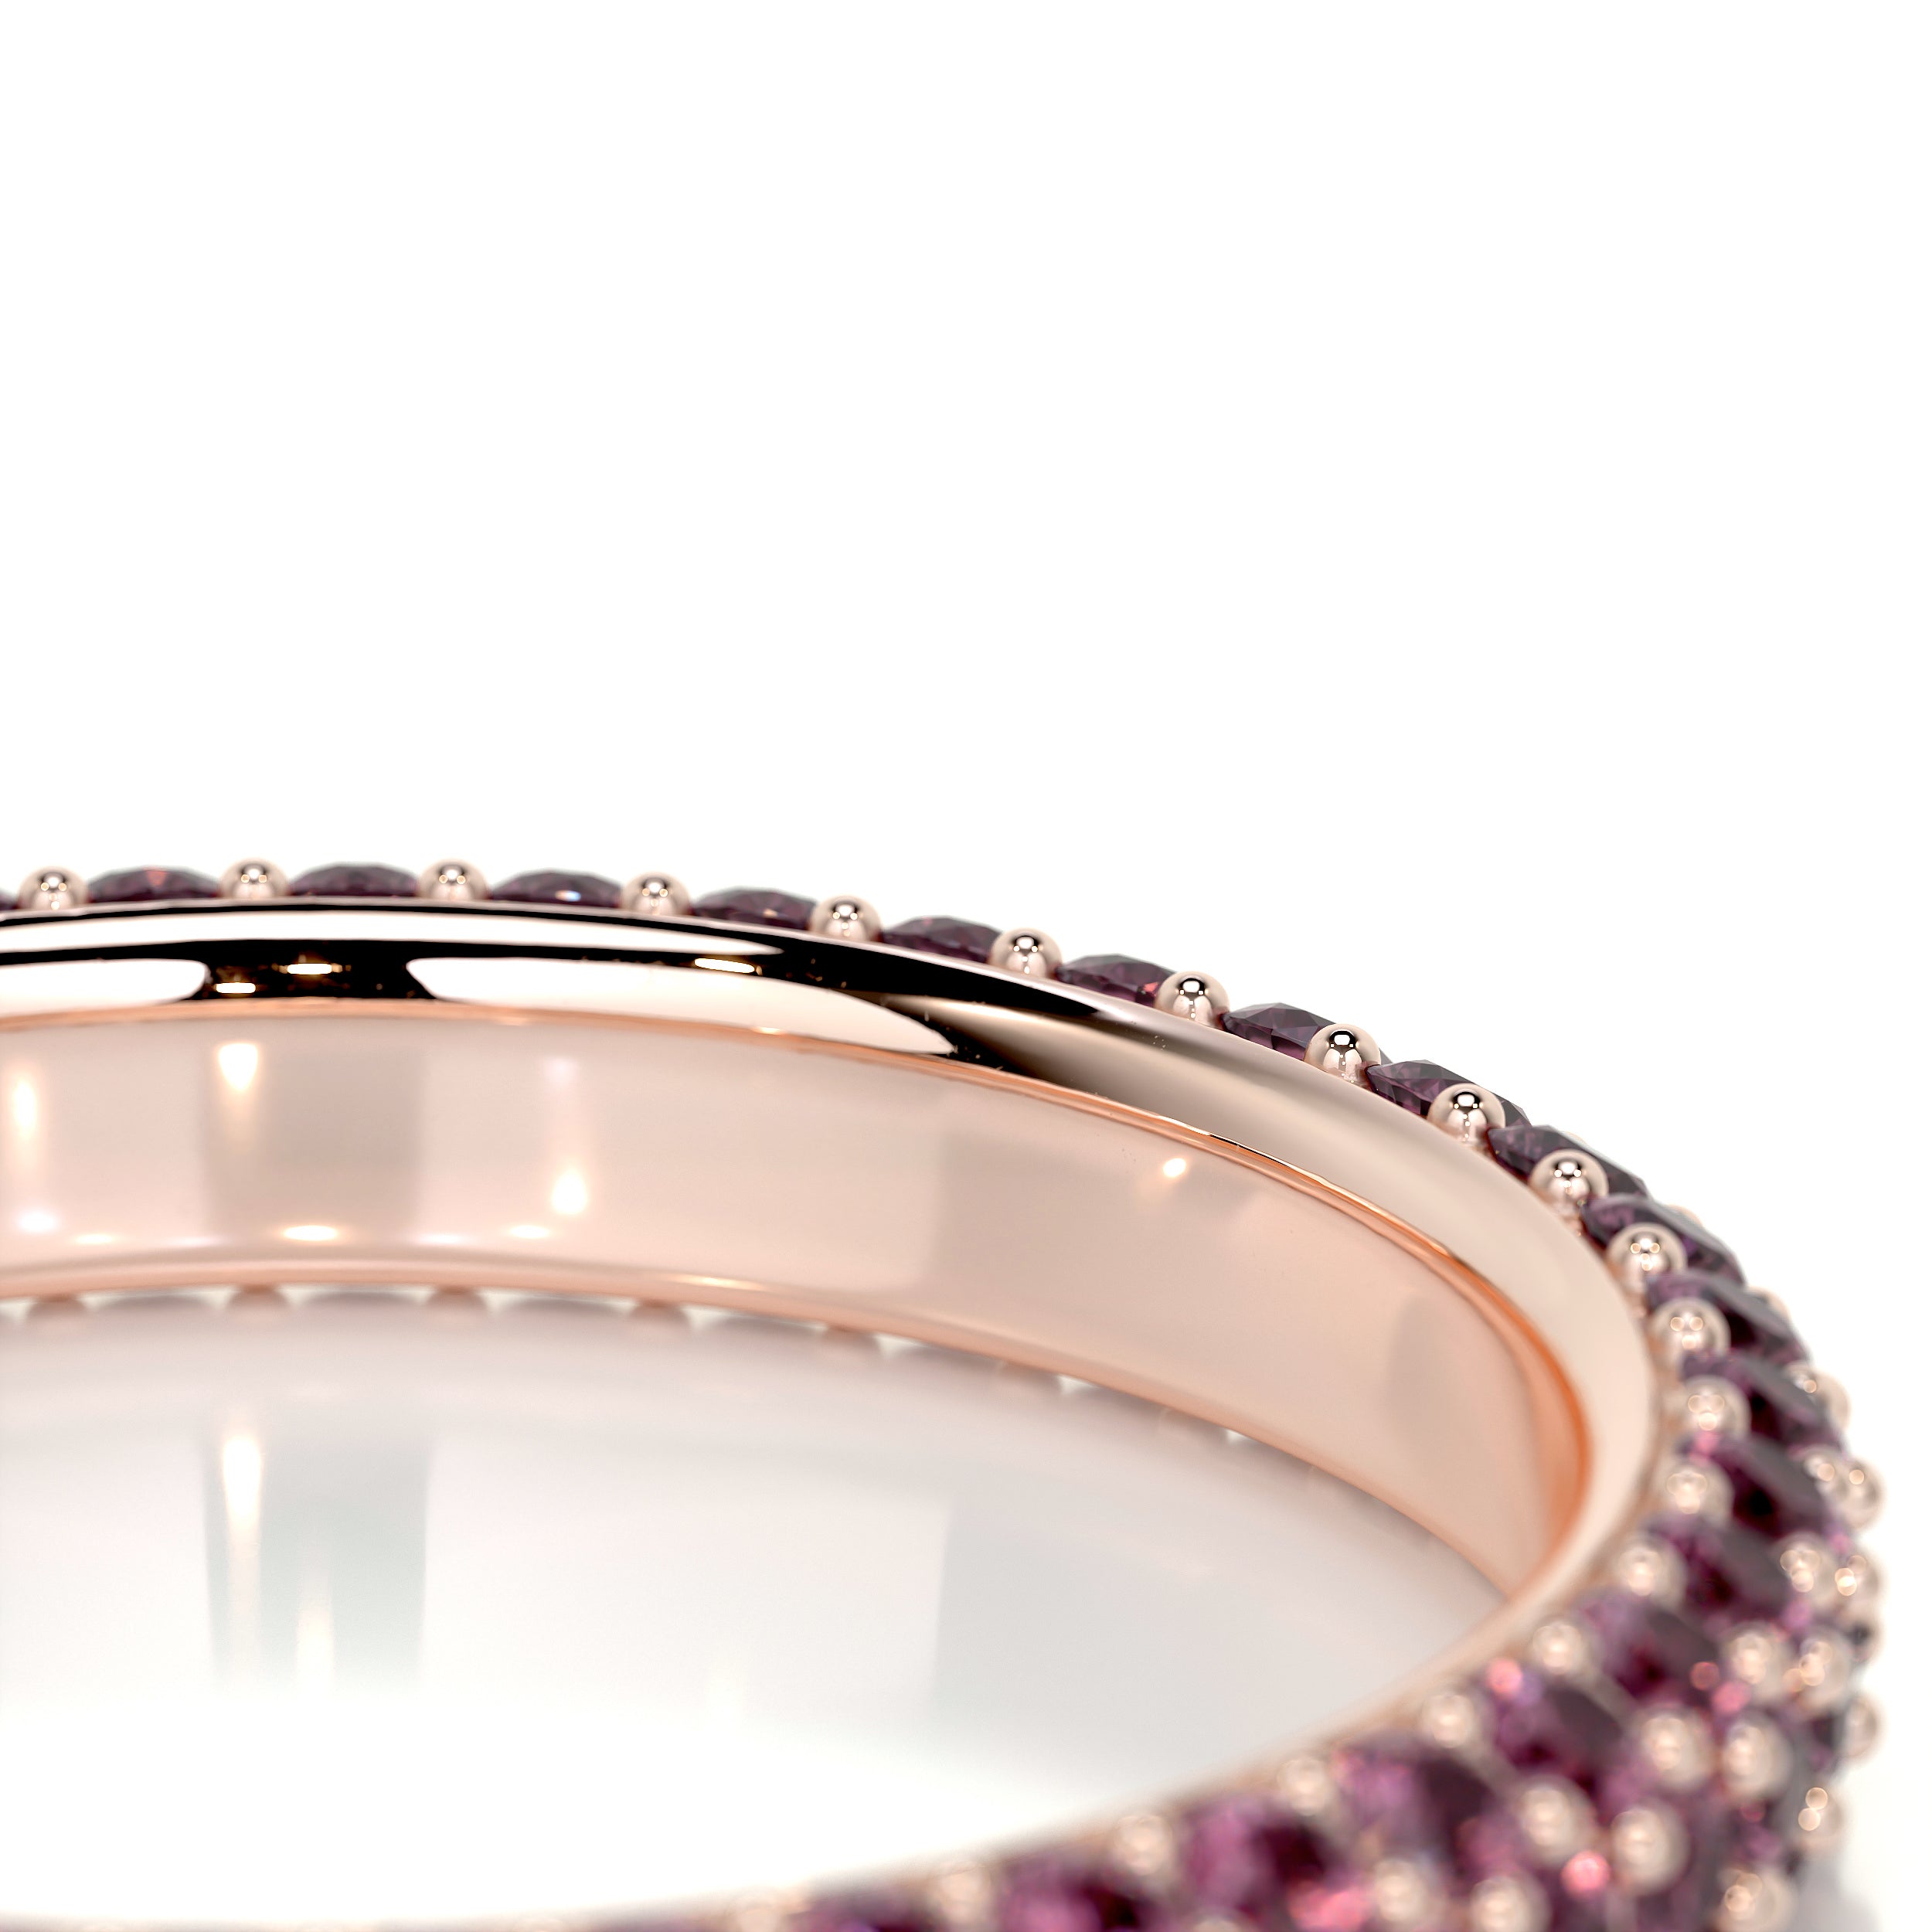 Emma Pink Gemstone Wedding Ring   (1.25 Carat) - 14K Rose Gold